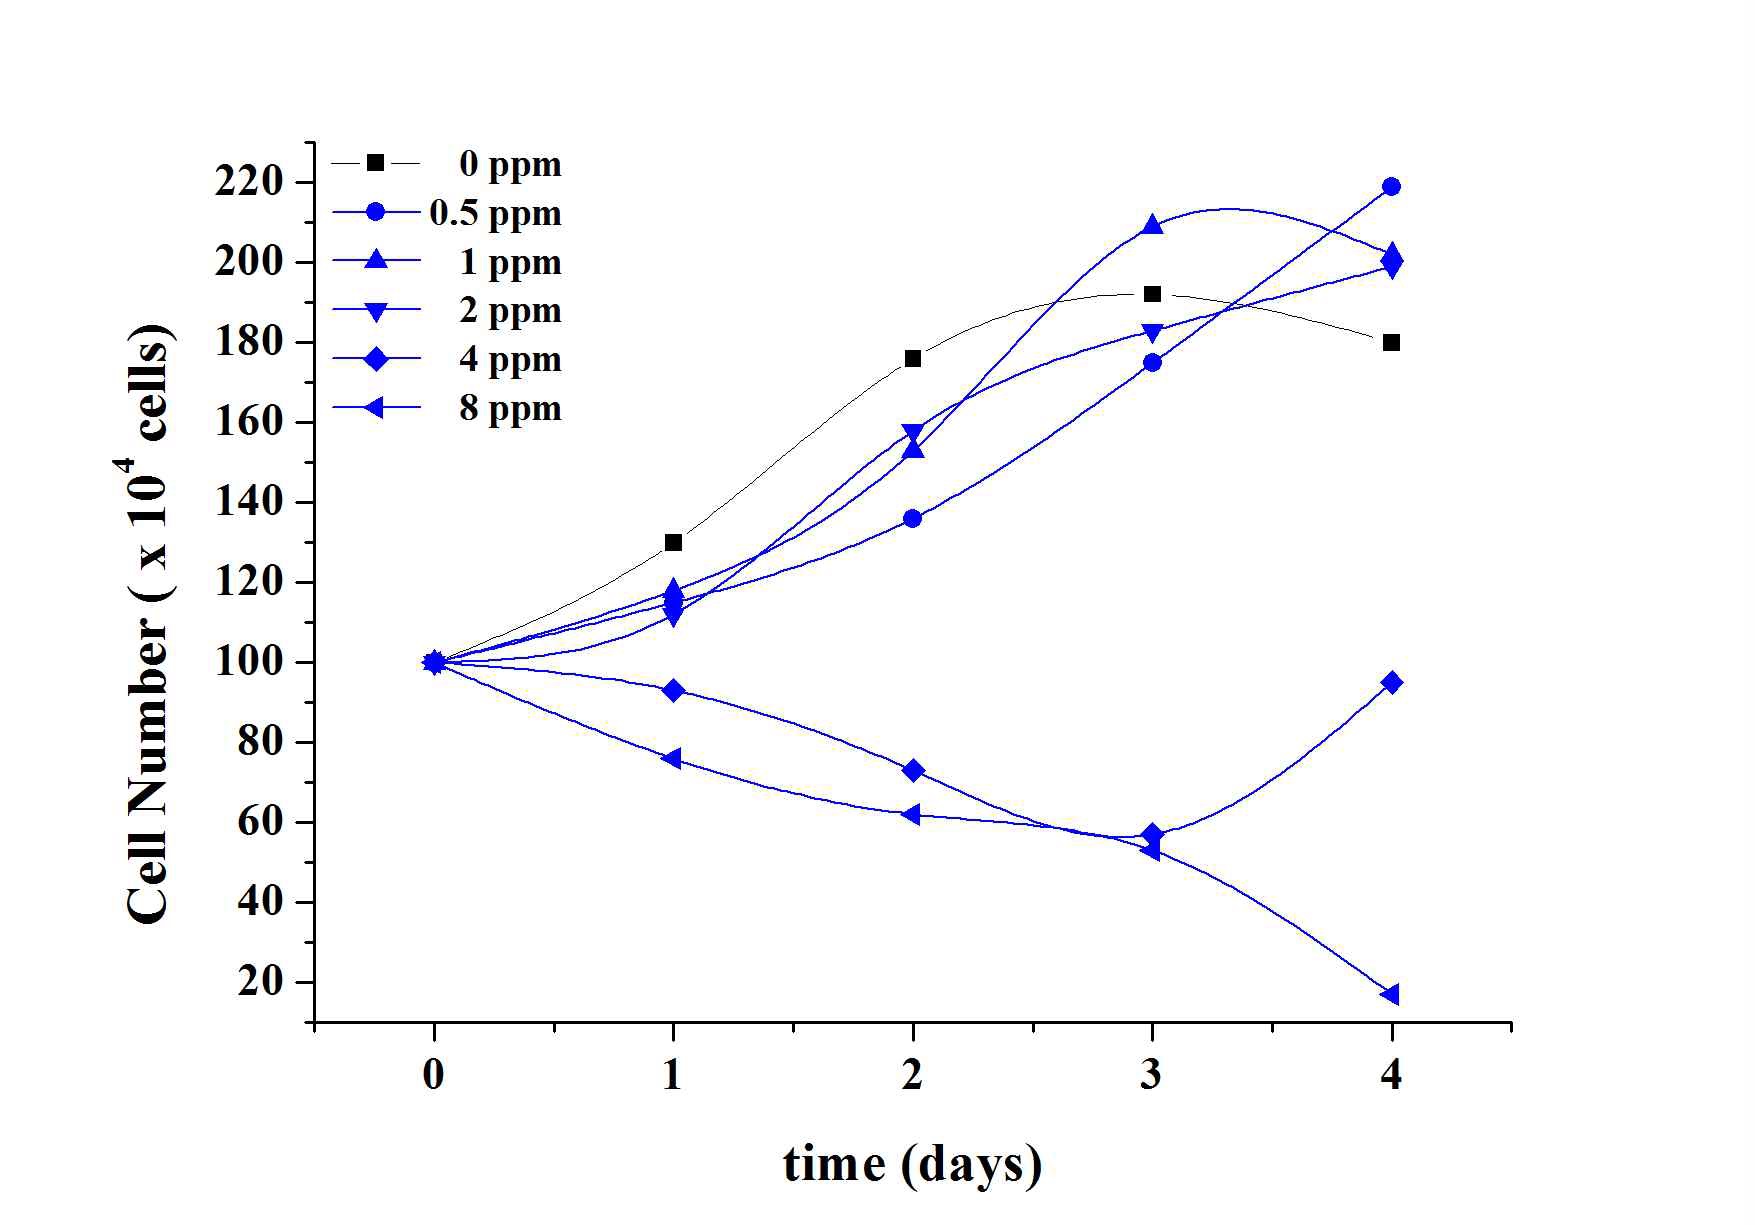 Strickland and Parson법에 의한 황토를 살포한 Microcystis aeruginosa의 세포수에 대한 96 hr 시간후 변화량